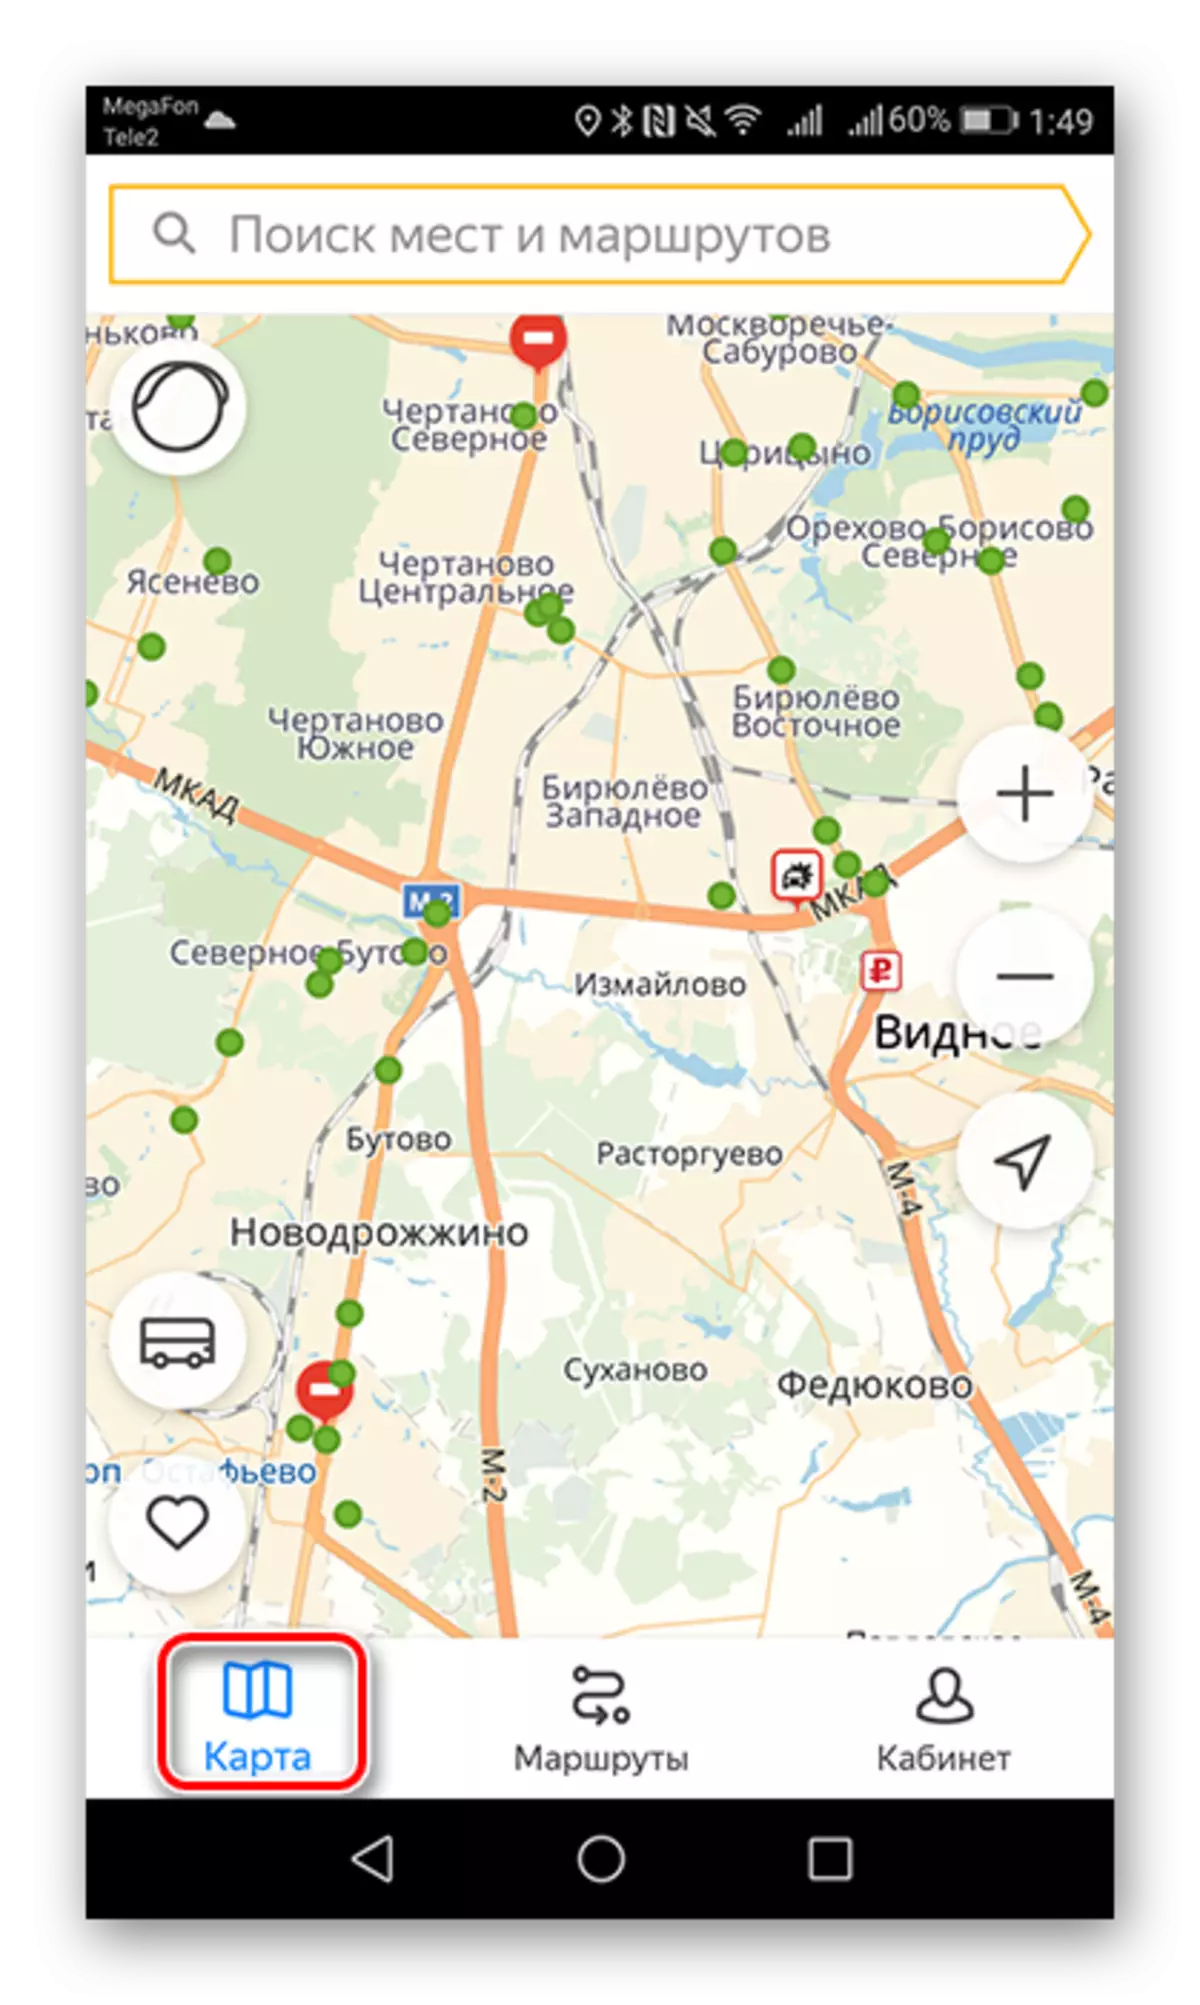 Vajutades kaardil nuppu Yandex.Transport